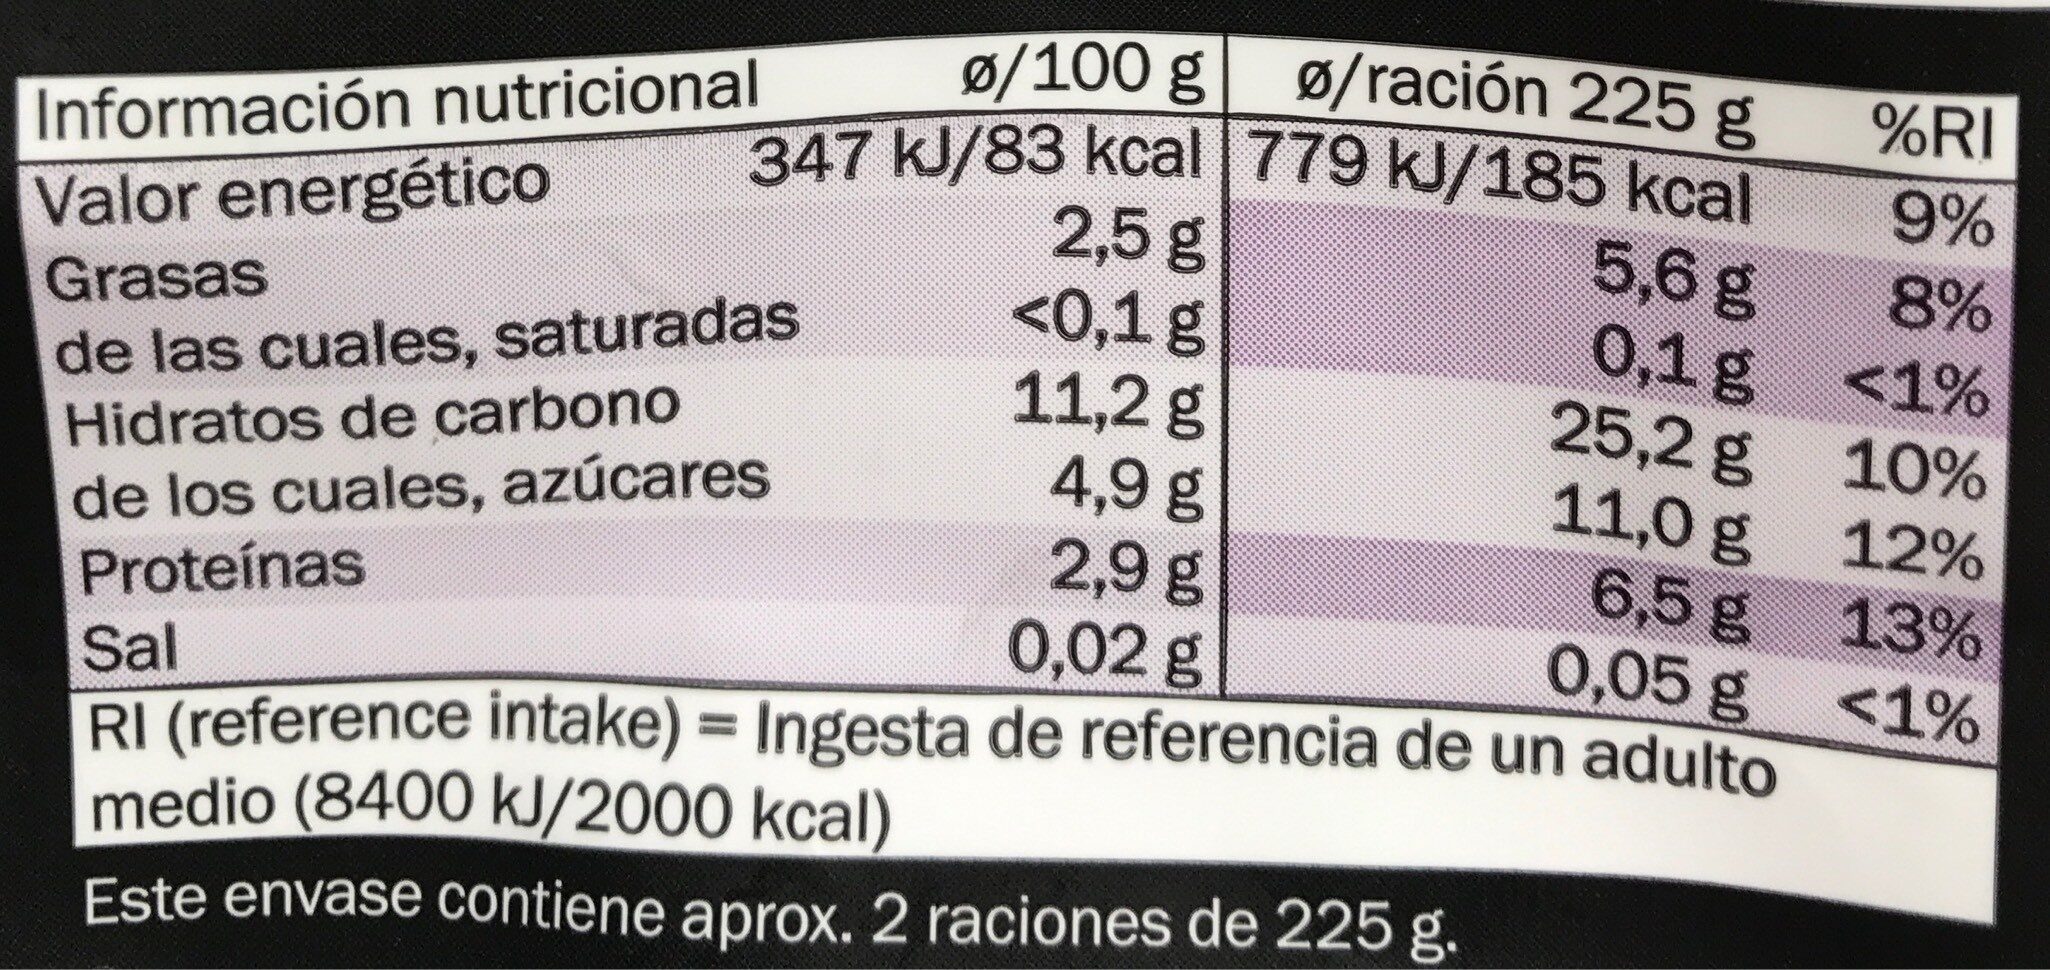 parrillada campestre - Nutrition facts - es